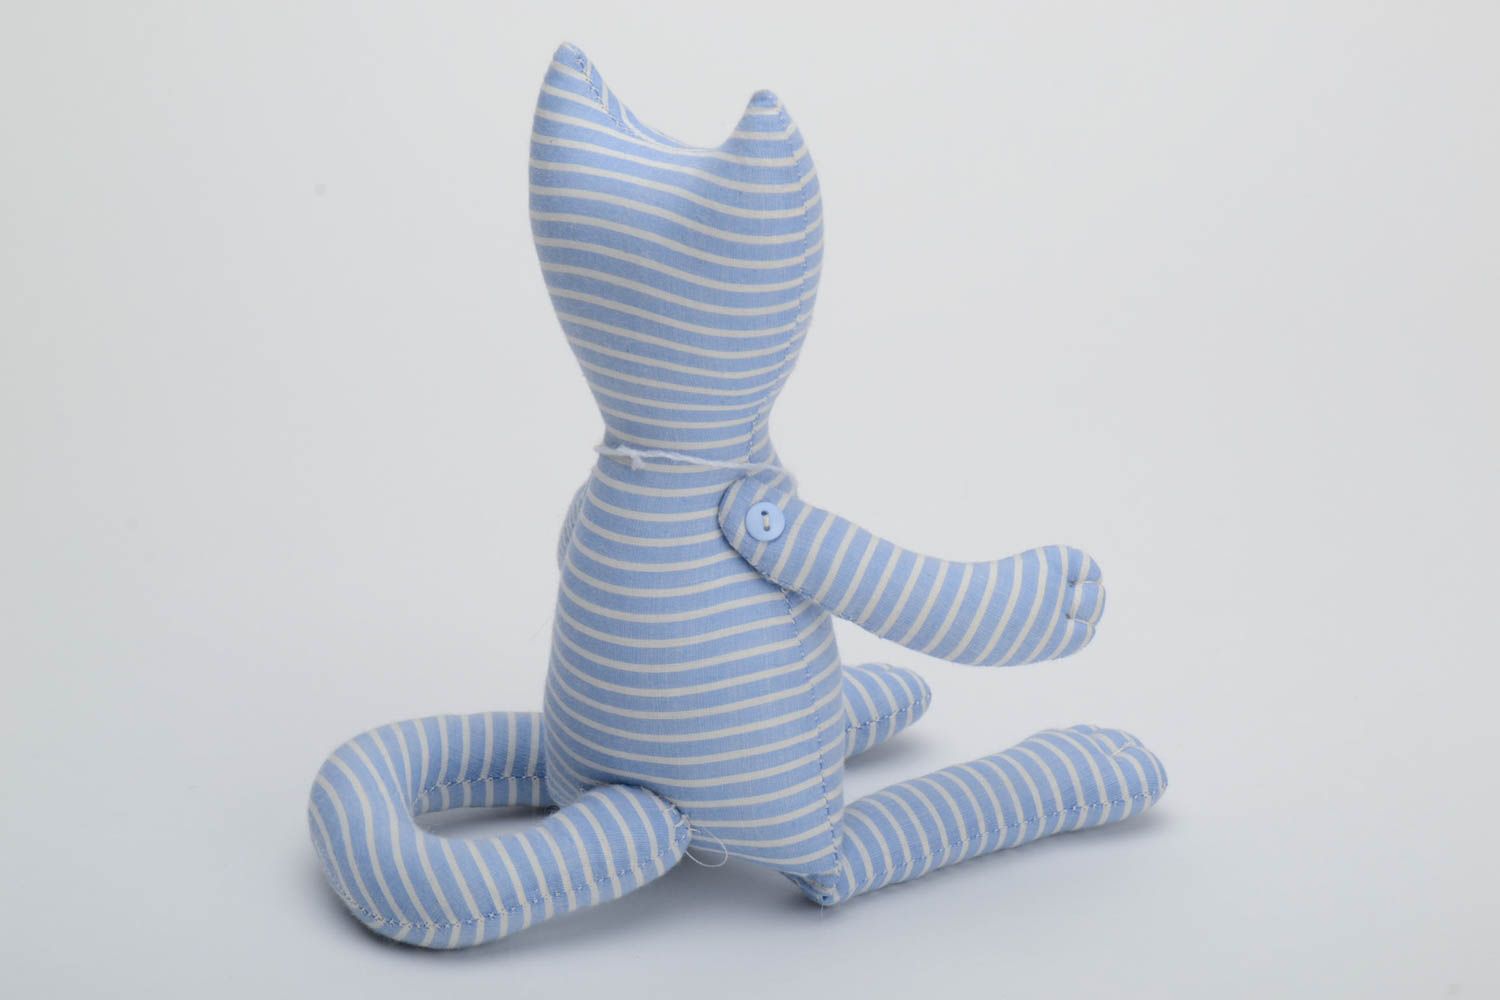 Мягкая тканевая игрушка полосатый кот из хлопка ручной работы с длинным хвостом фото 3